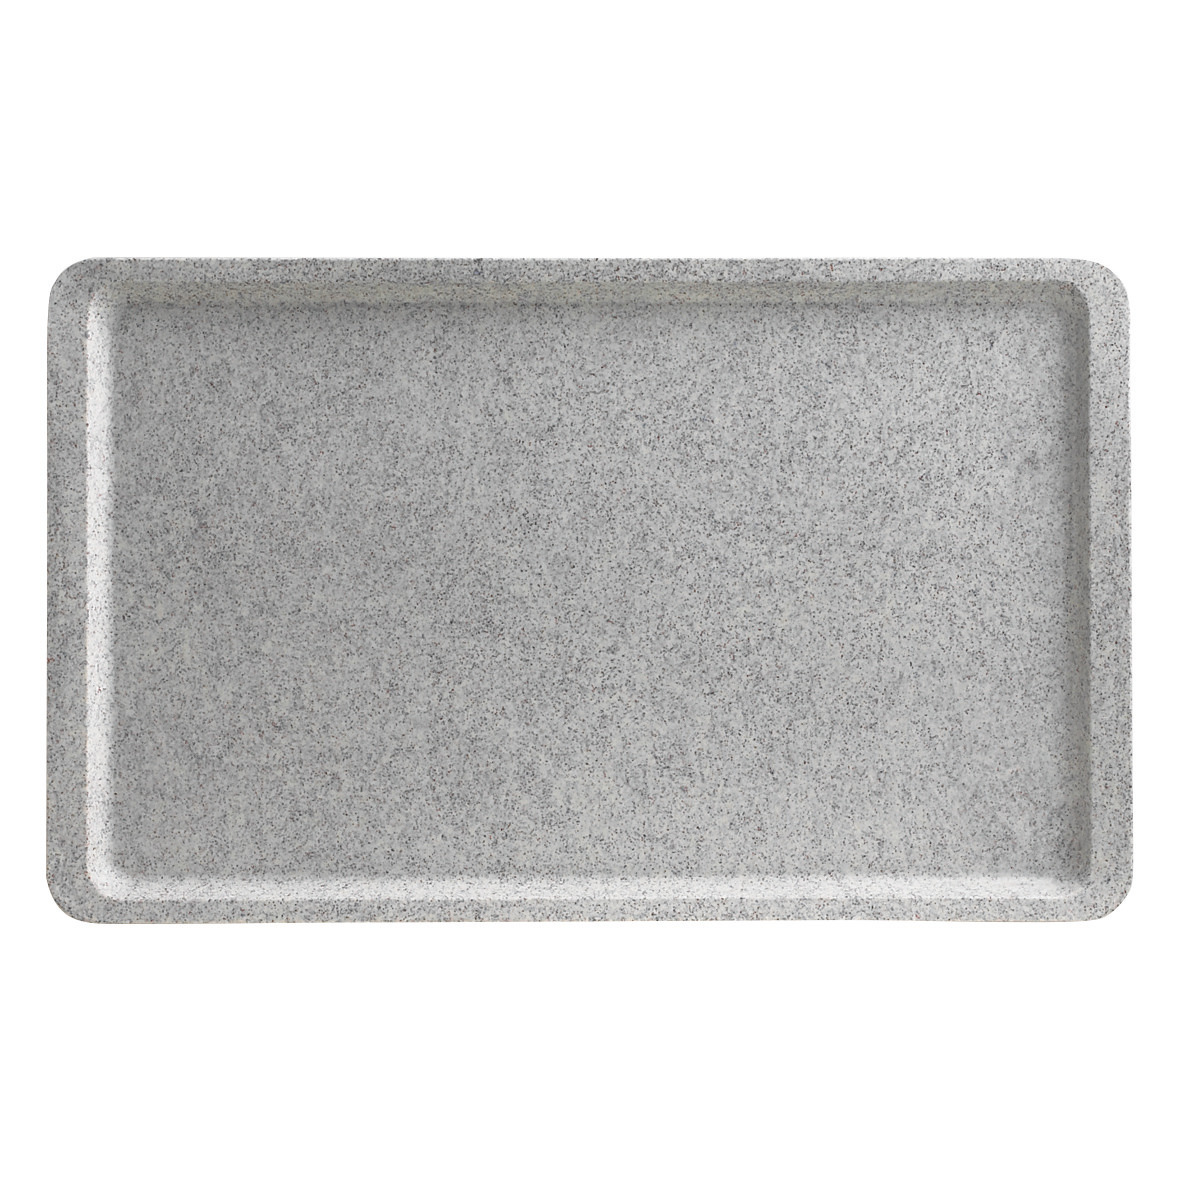 GN-Tablett Polyester Versa glatt GN 1/2 325 x 265 mm granit